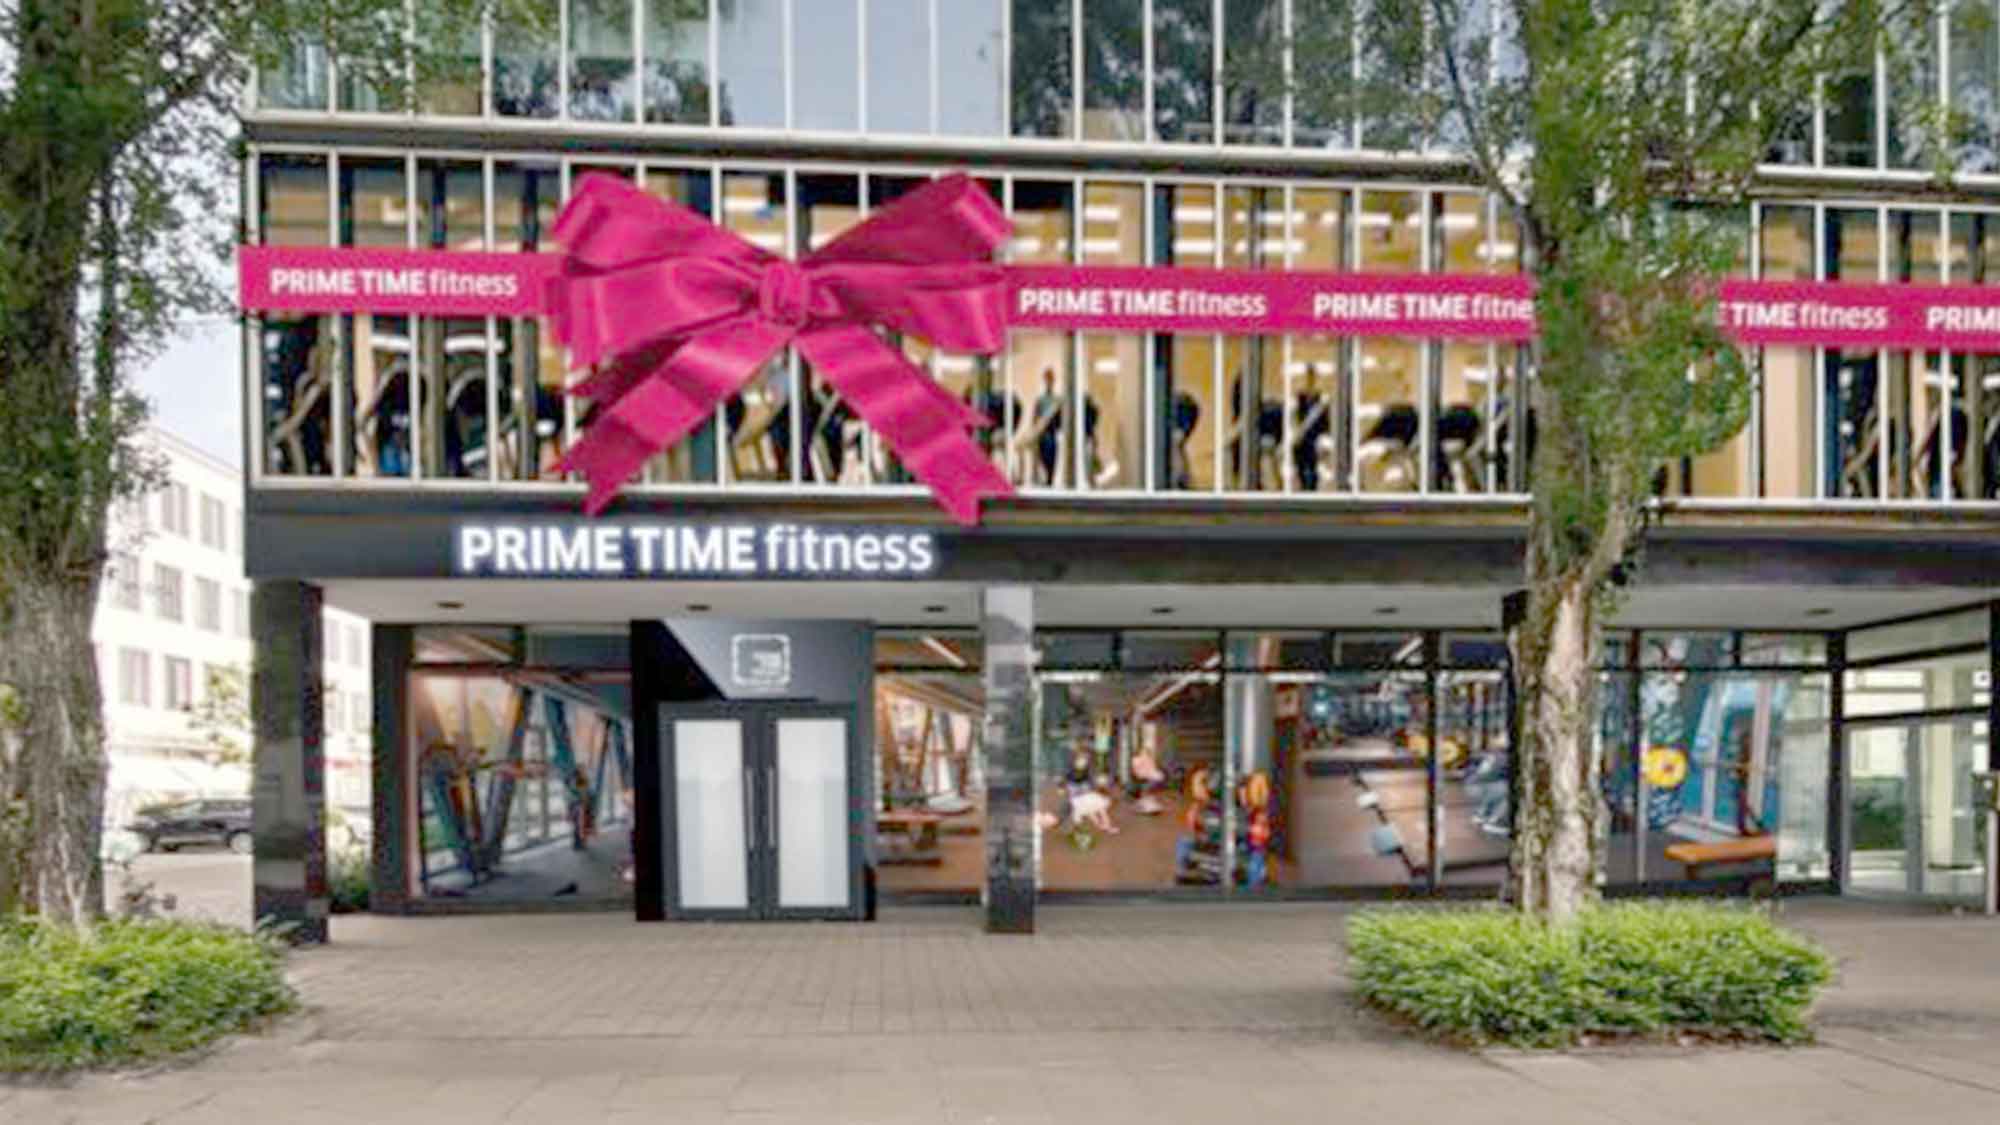 Prime Time Fitness jetzt neu am Kampnagel in Hamburg: Die Premiumfitnesskette eröffnete 3. Studio in Hamburg